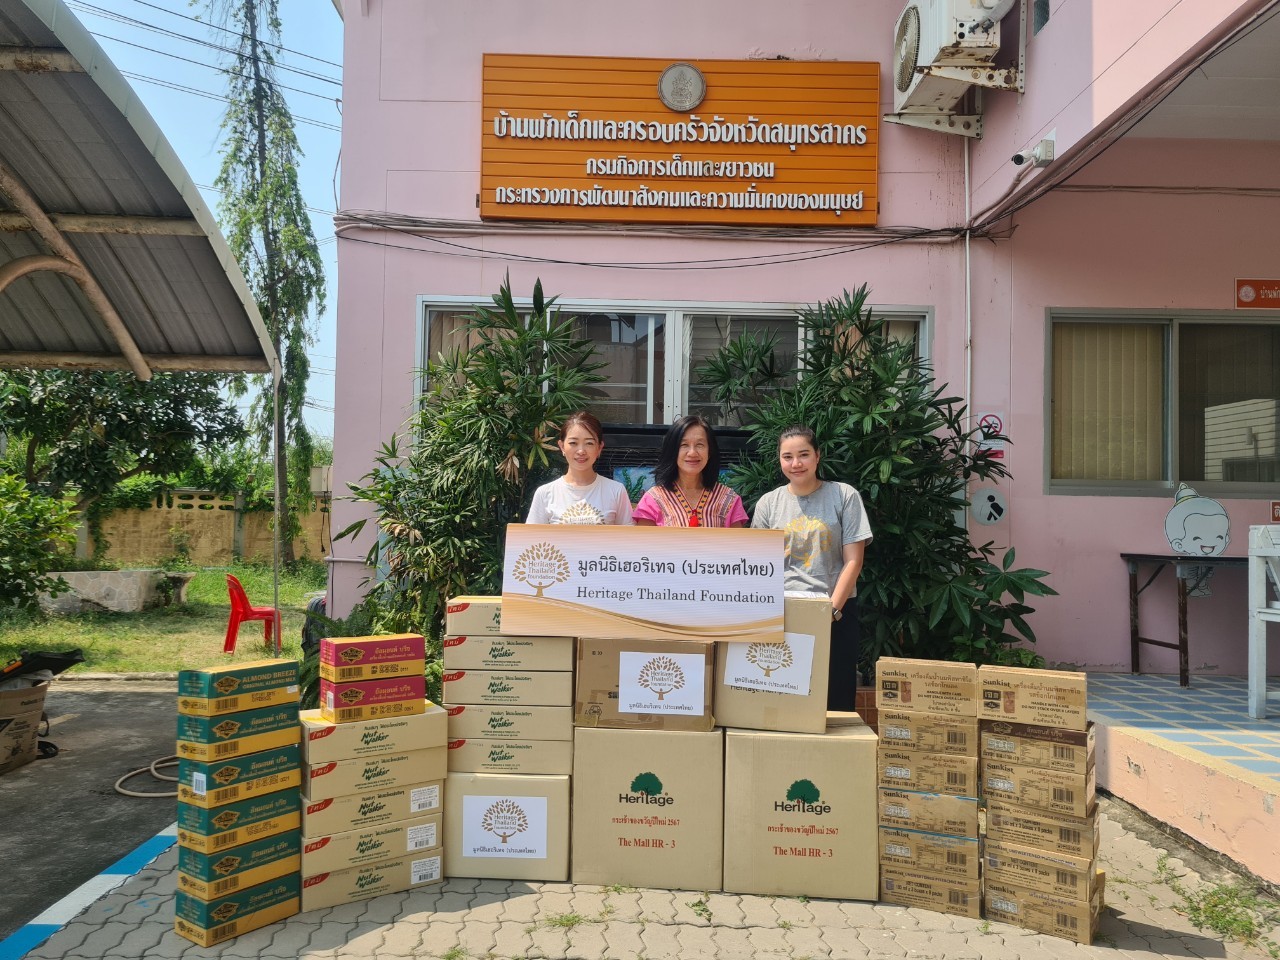 มูลนิธิเฮอริเทจ (ประเทศไทย) ส่งมอบผลิตภัณฑ์ให้บ้านพักเด็กและครอบครัว  จังหวัดสมุทรสาคร